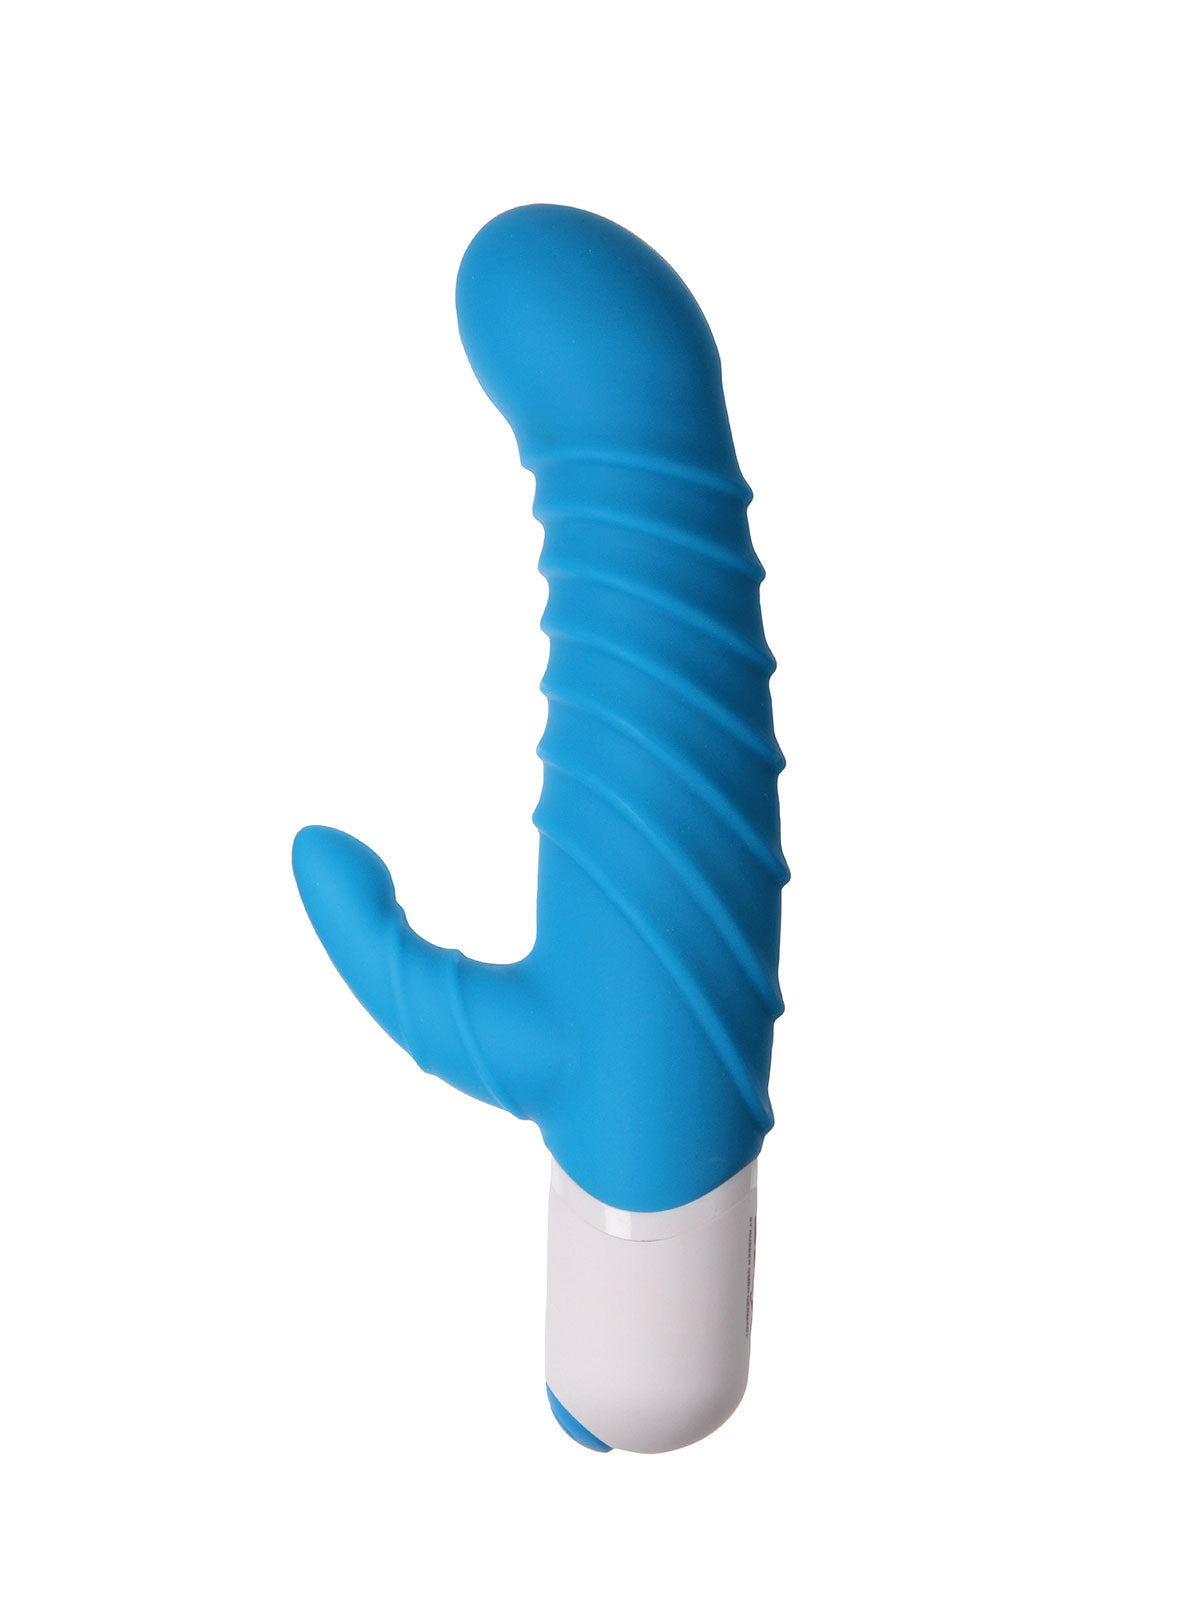 Blue Ayleen Rabbit Vibrator by SToys